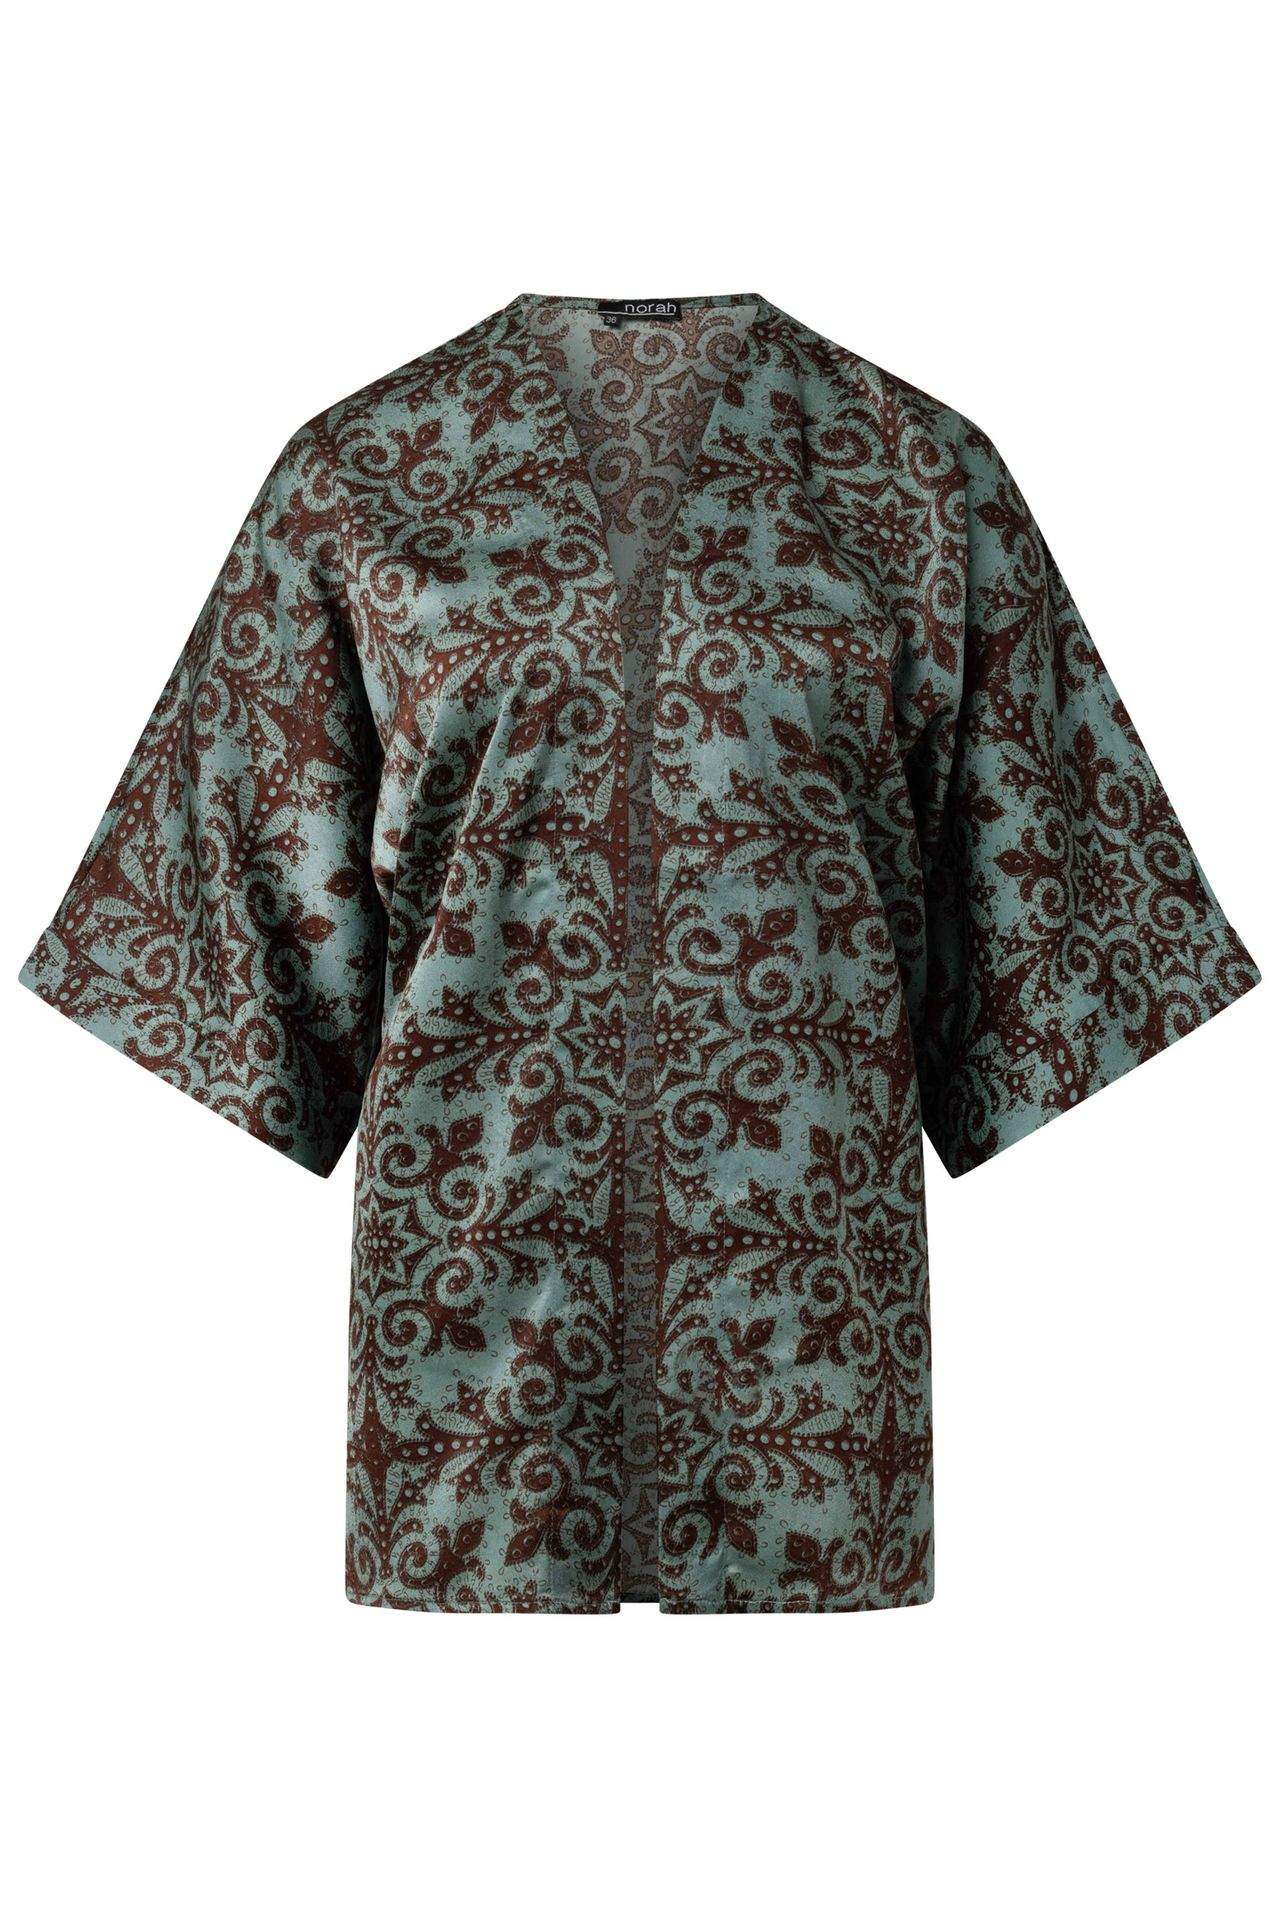 Norah Kimono groen/bruin green/brown 214050-532